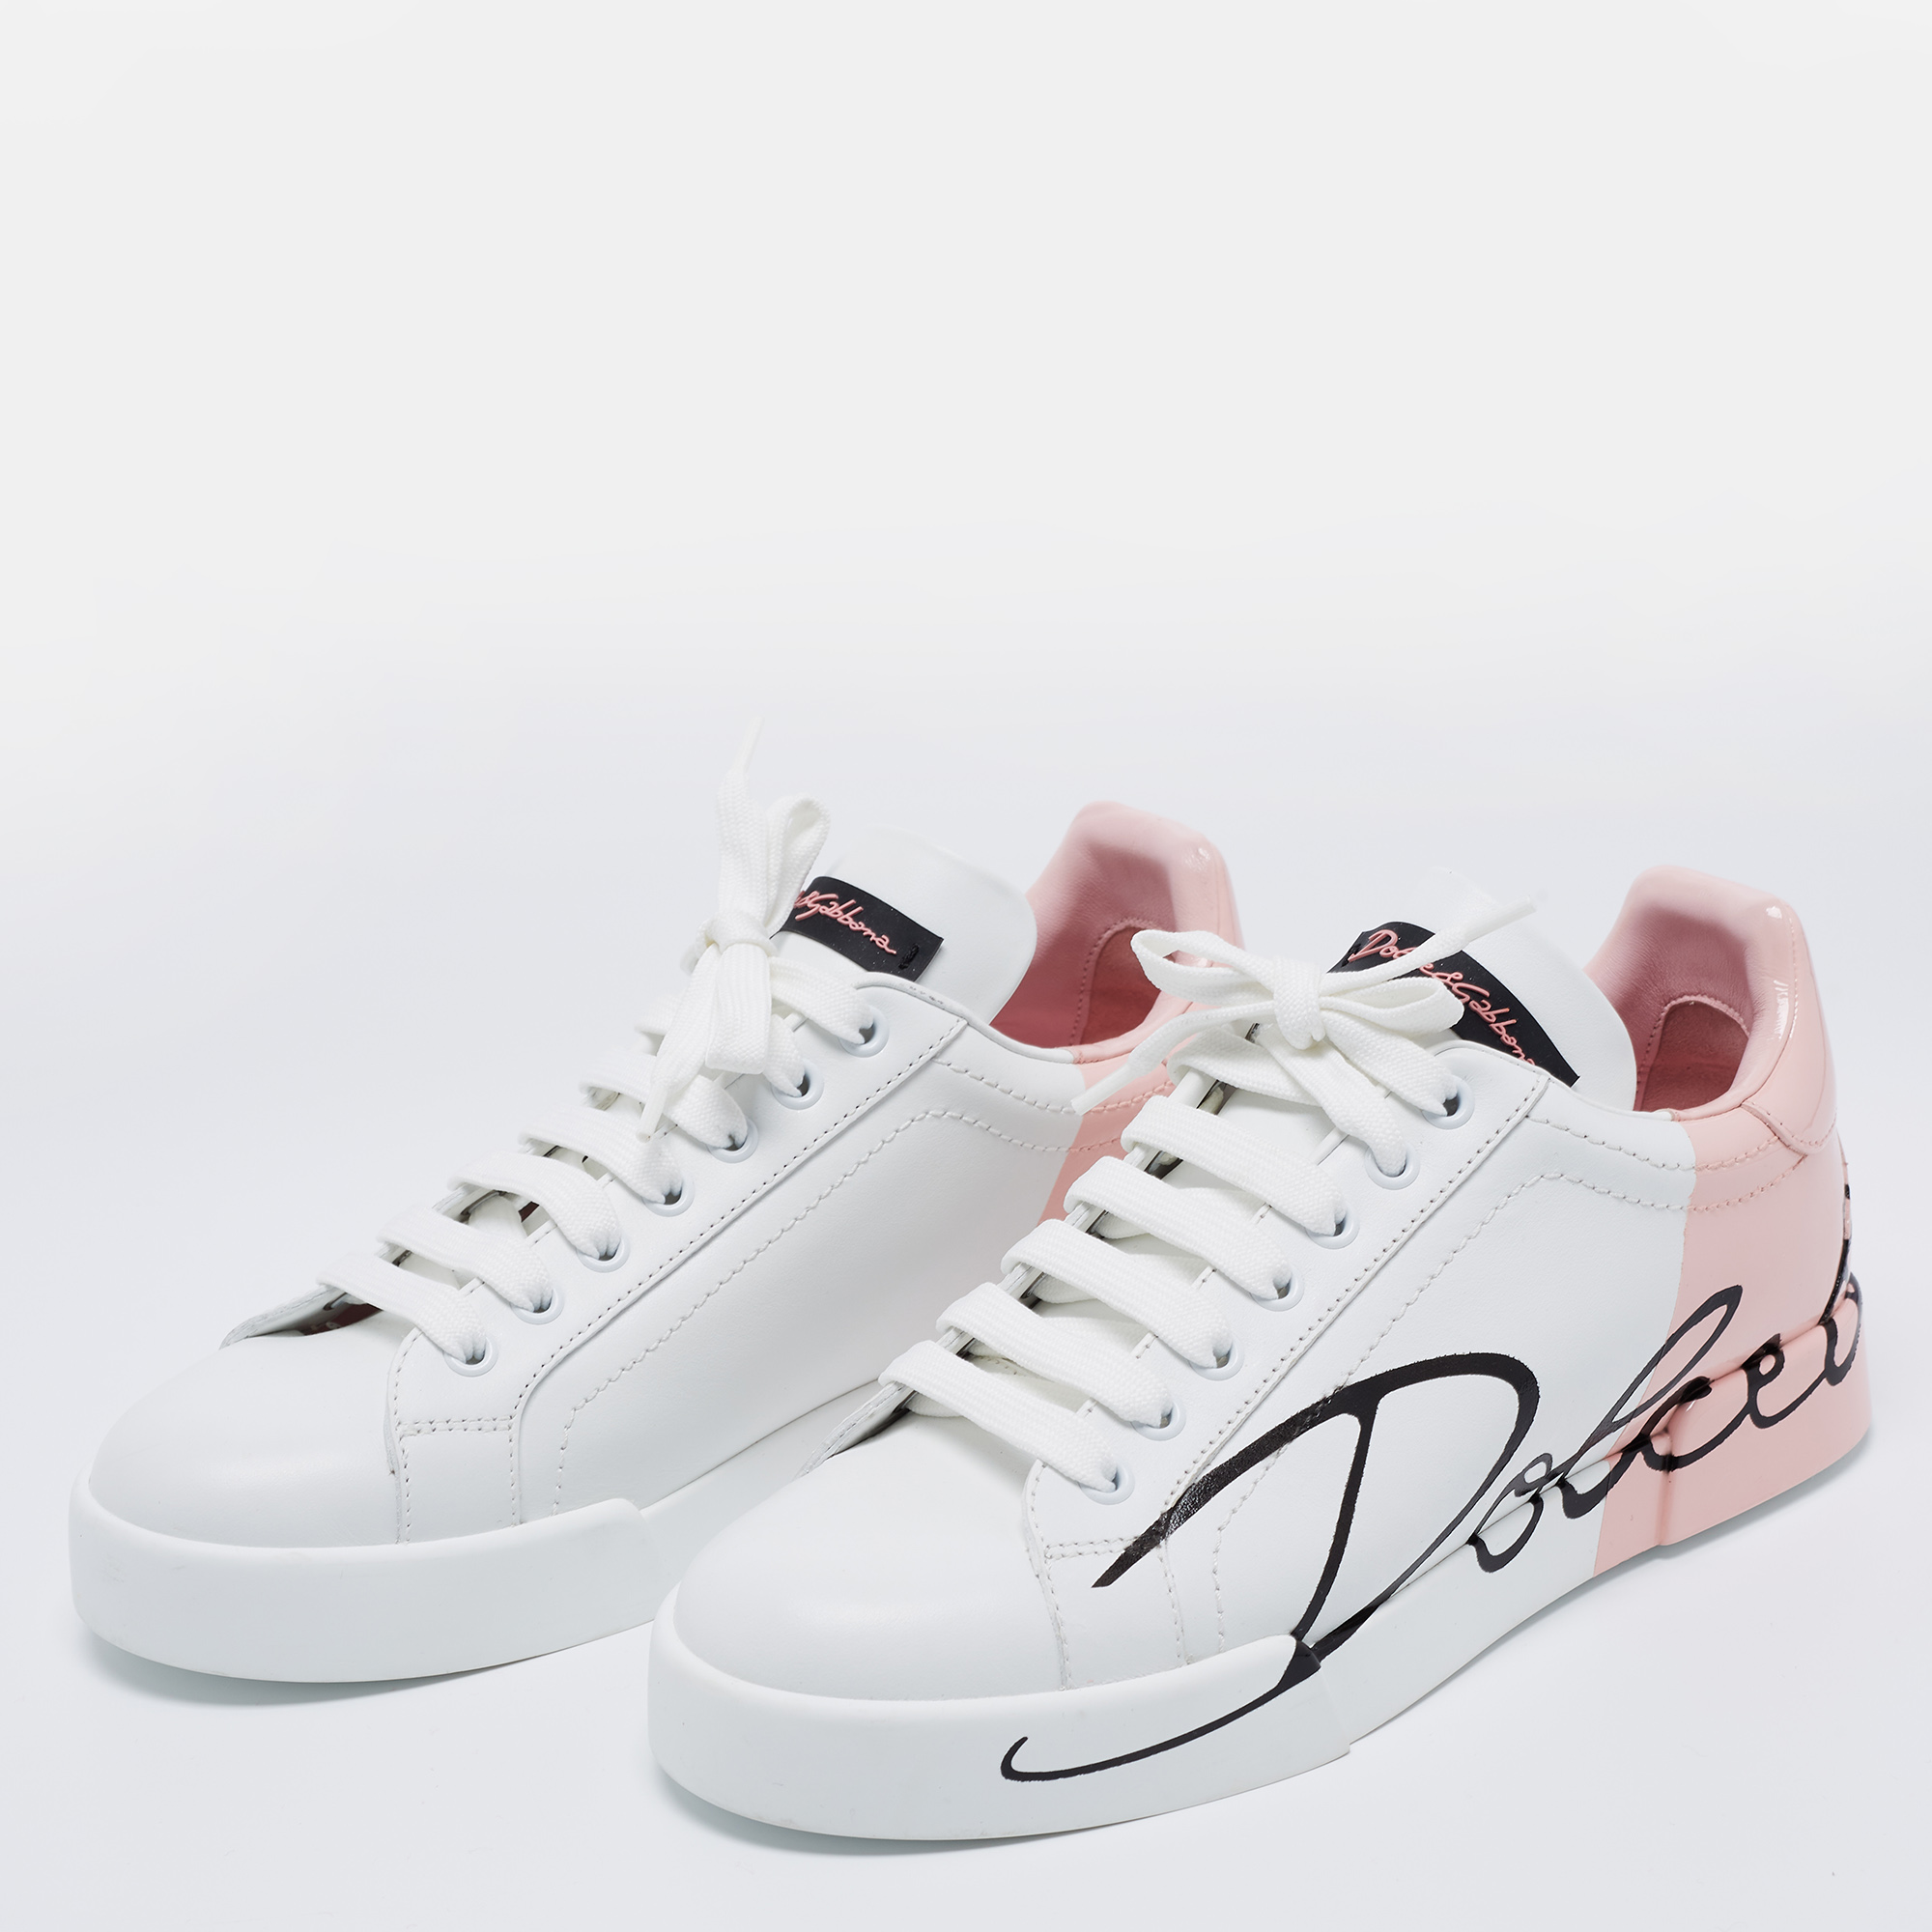 

Dolce & Gabbana White Leather And Patent Portofino Sneakers Size